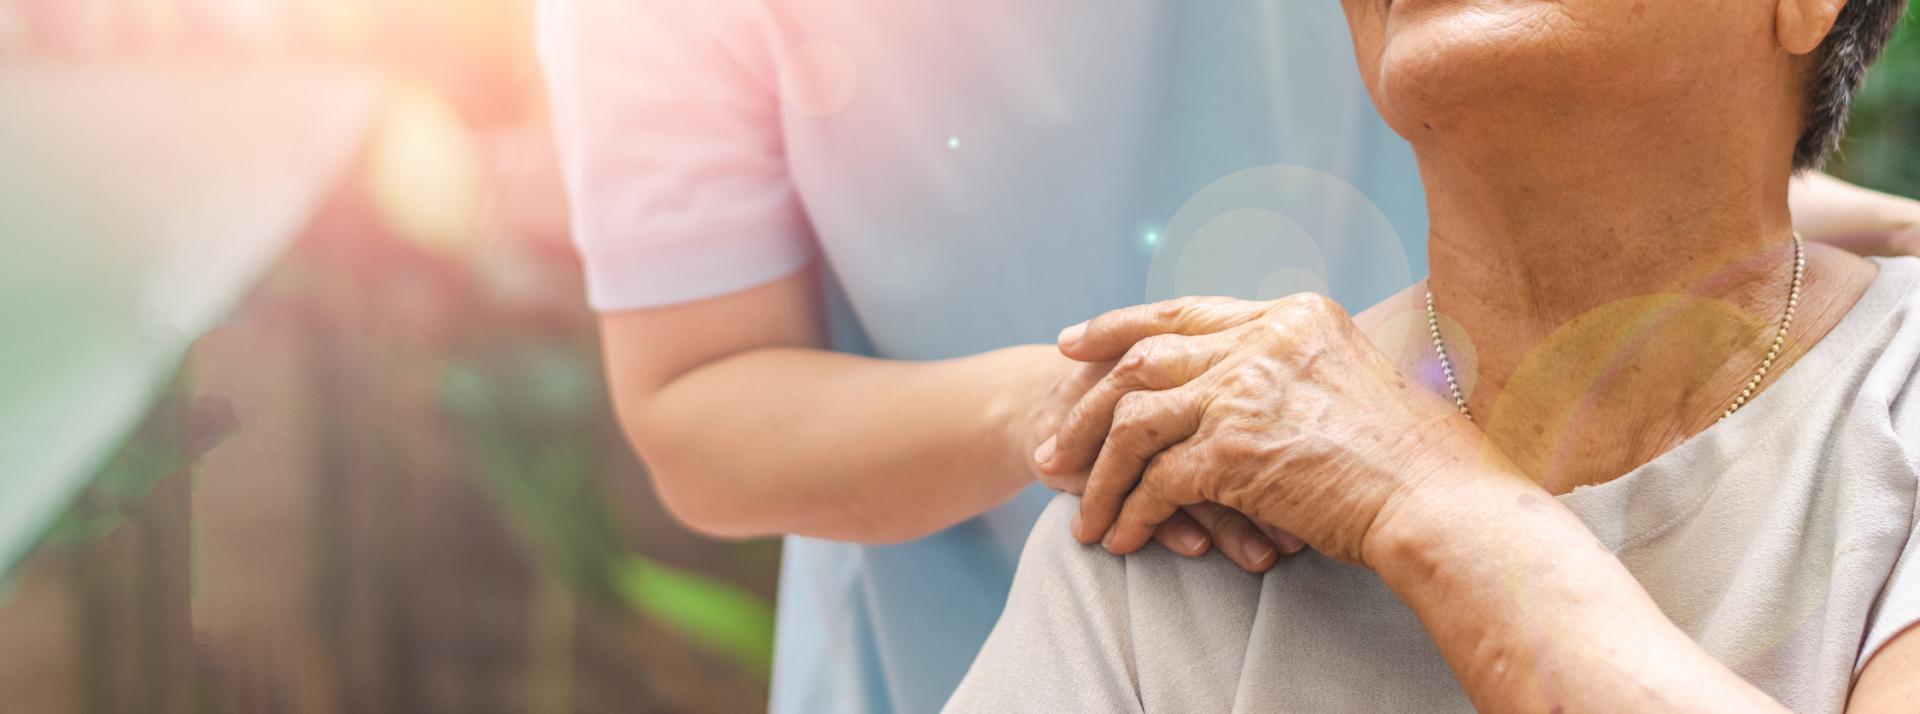 Caregiver, carer hand holding elder hand